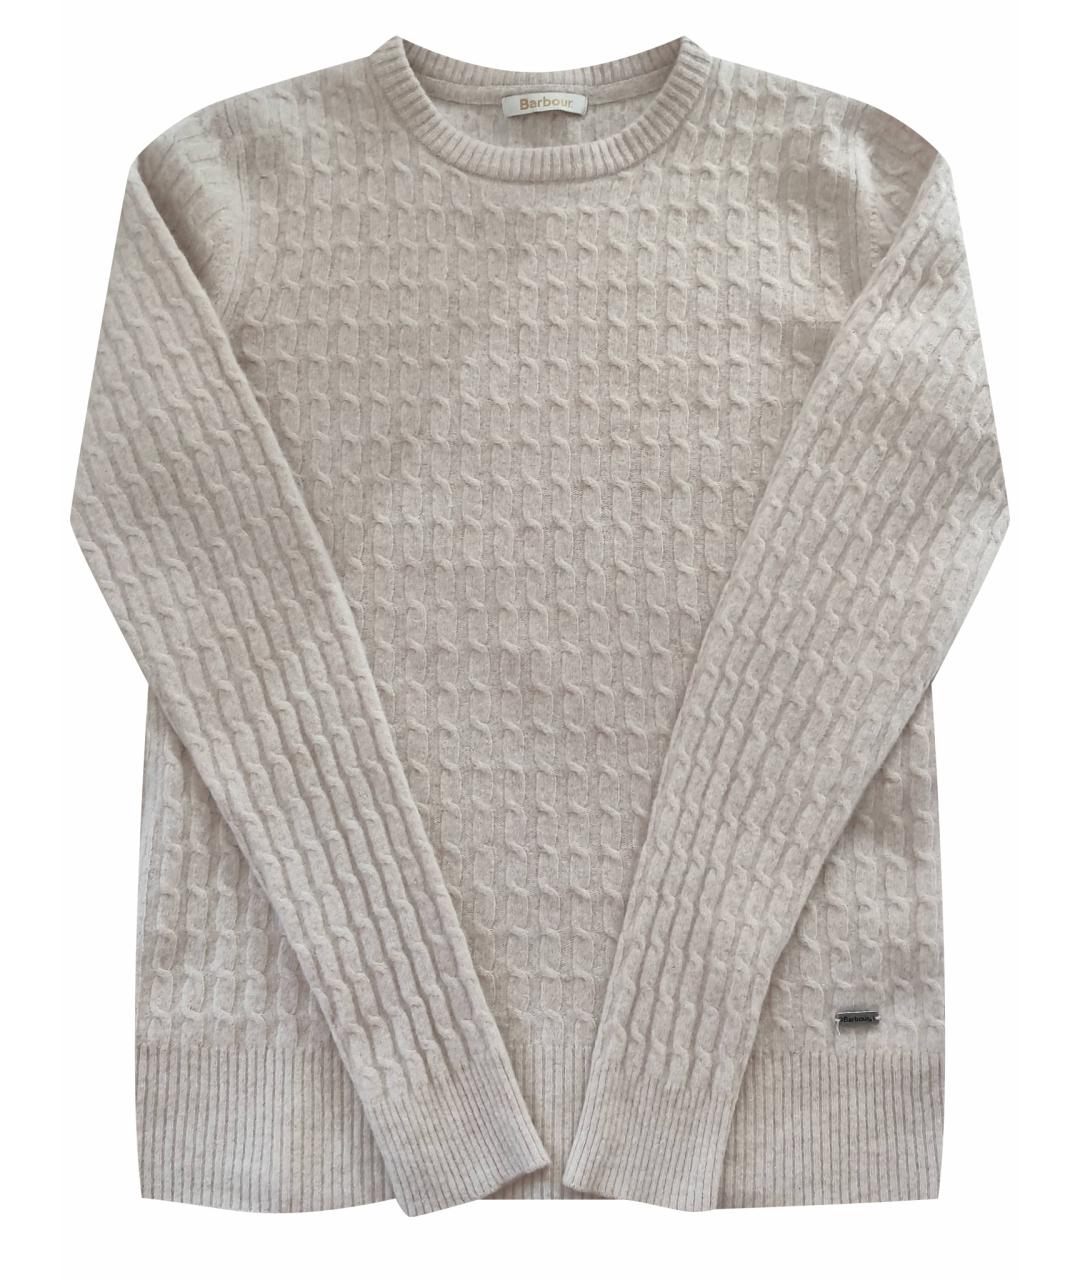 BARBOUR Бежевый шерстяной джемпер / свитер, фото 1